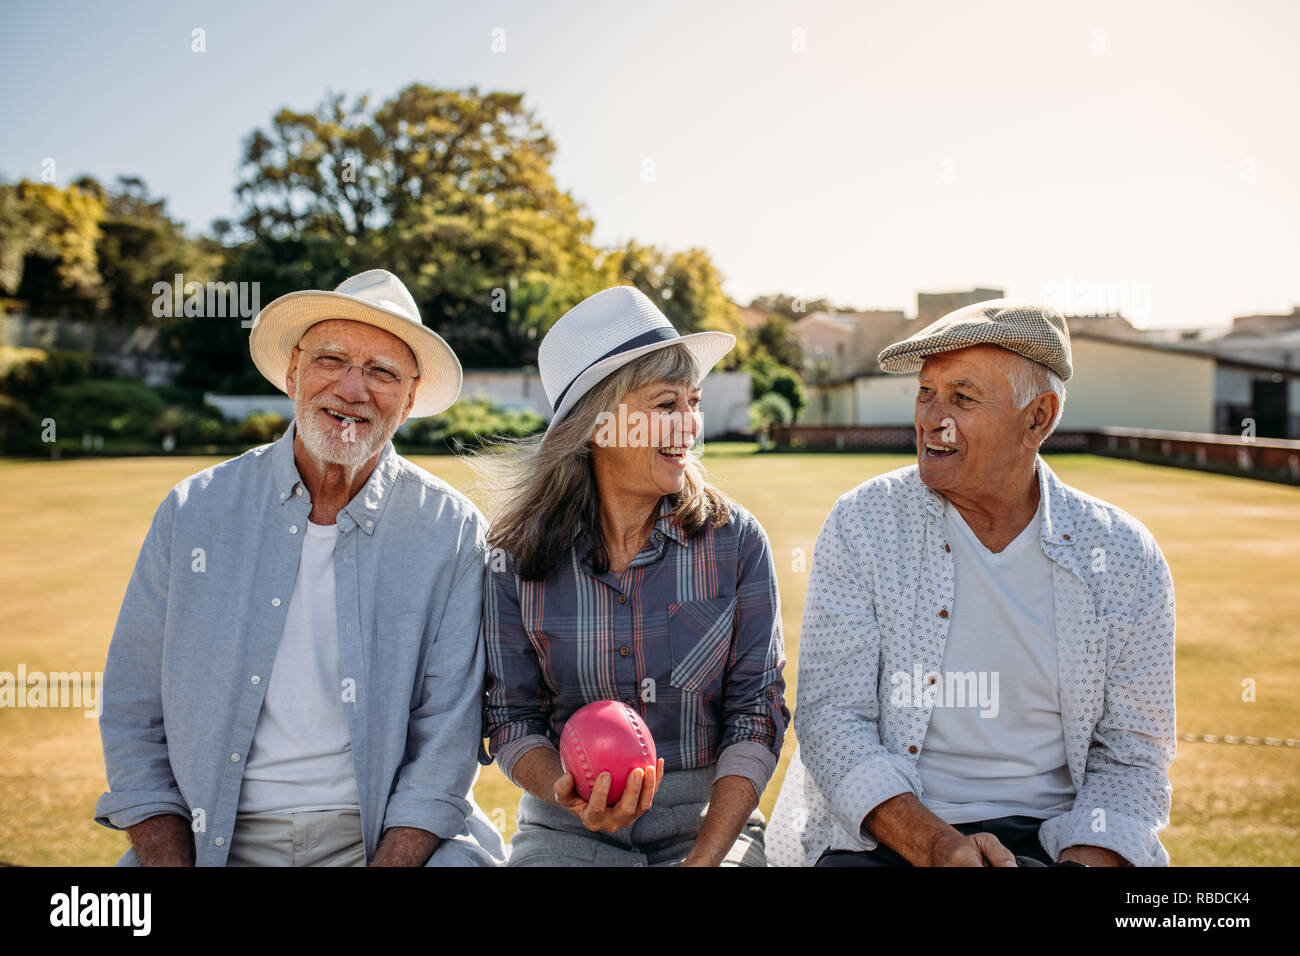 Hauts femme assise avec son ami boules dans la main. De vieux amis assis ensemble sur un banc dans un parc et de parler. Banque D'Images